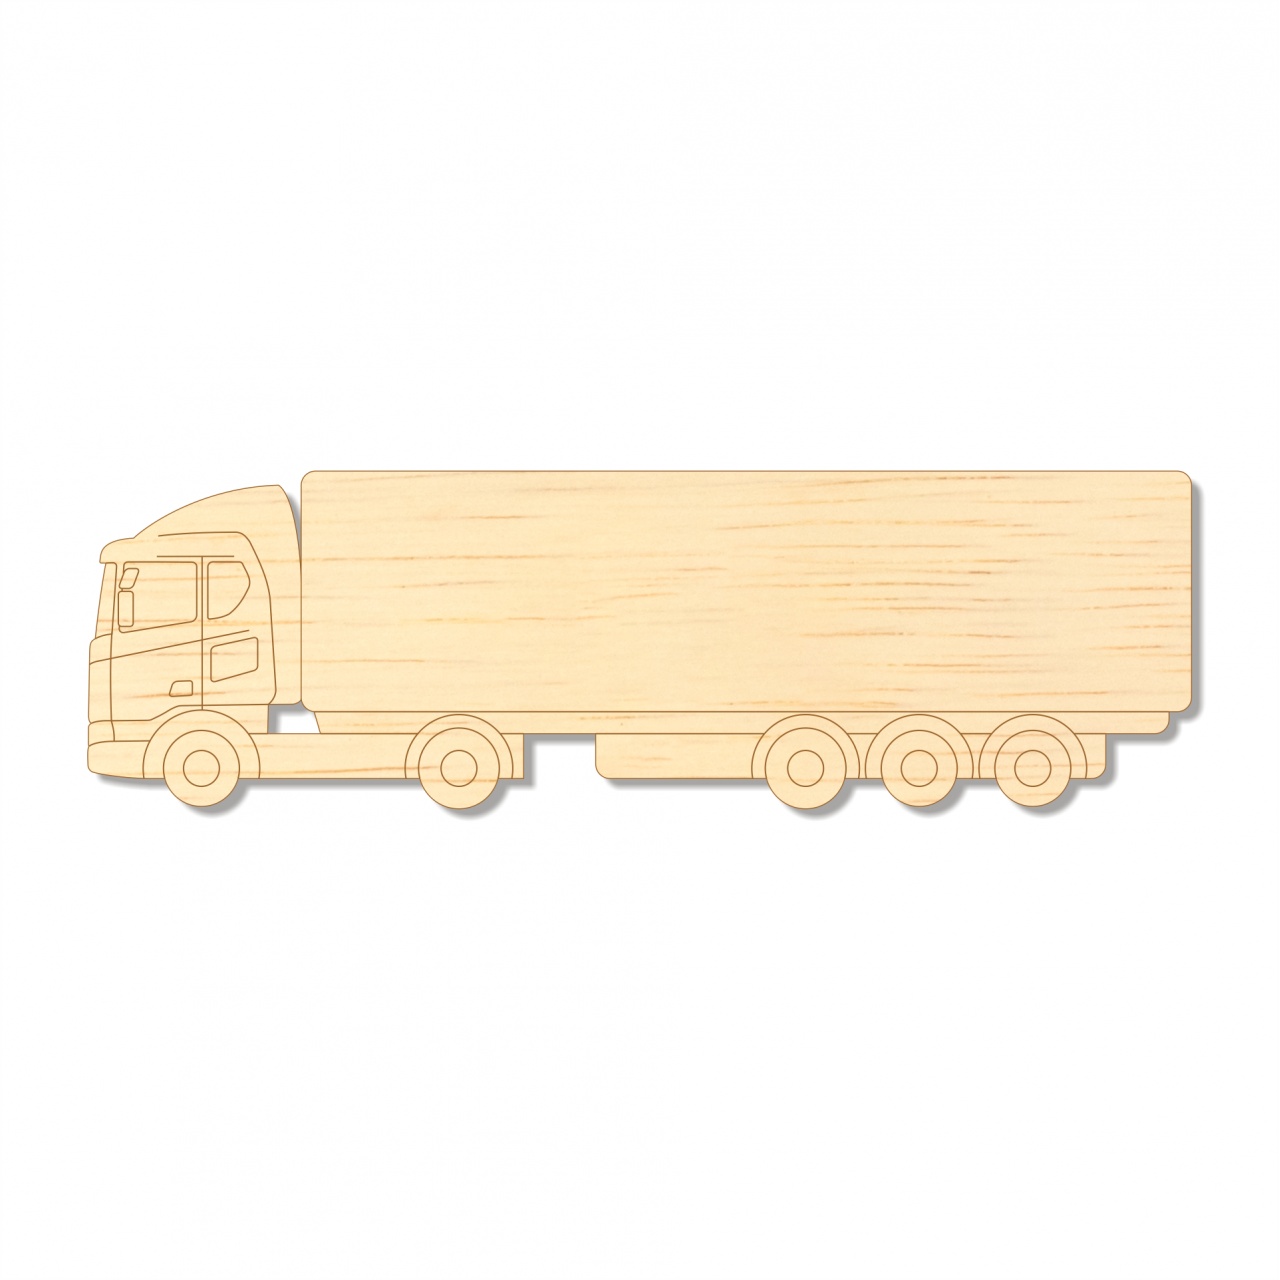 Camion TIR, 25×7,7 cm, placaj lemn